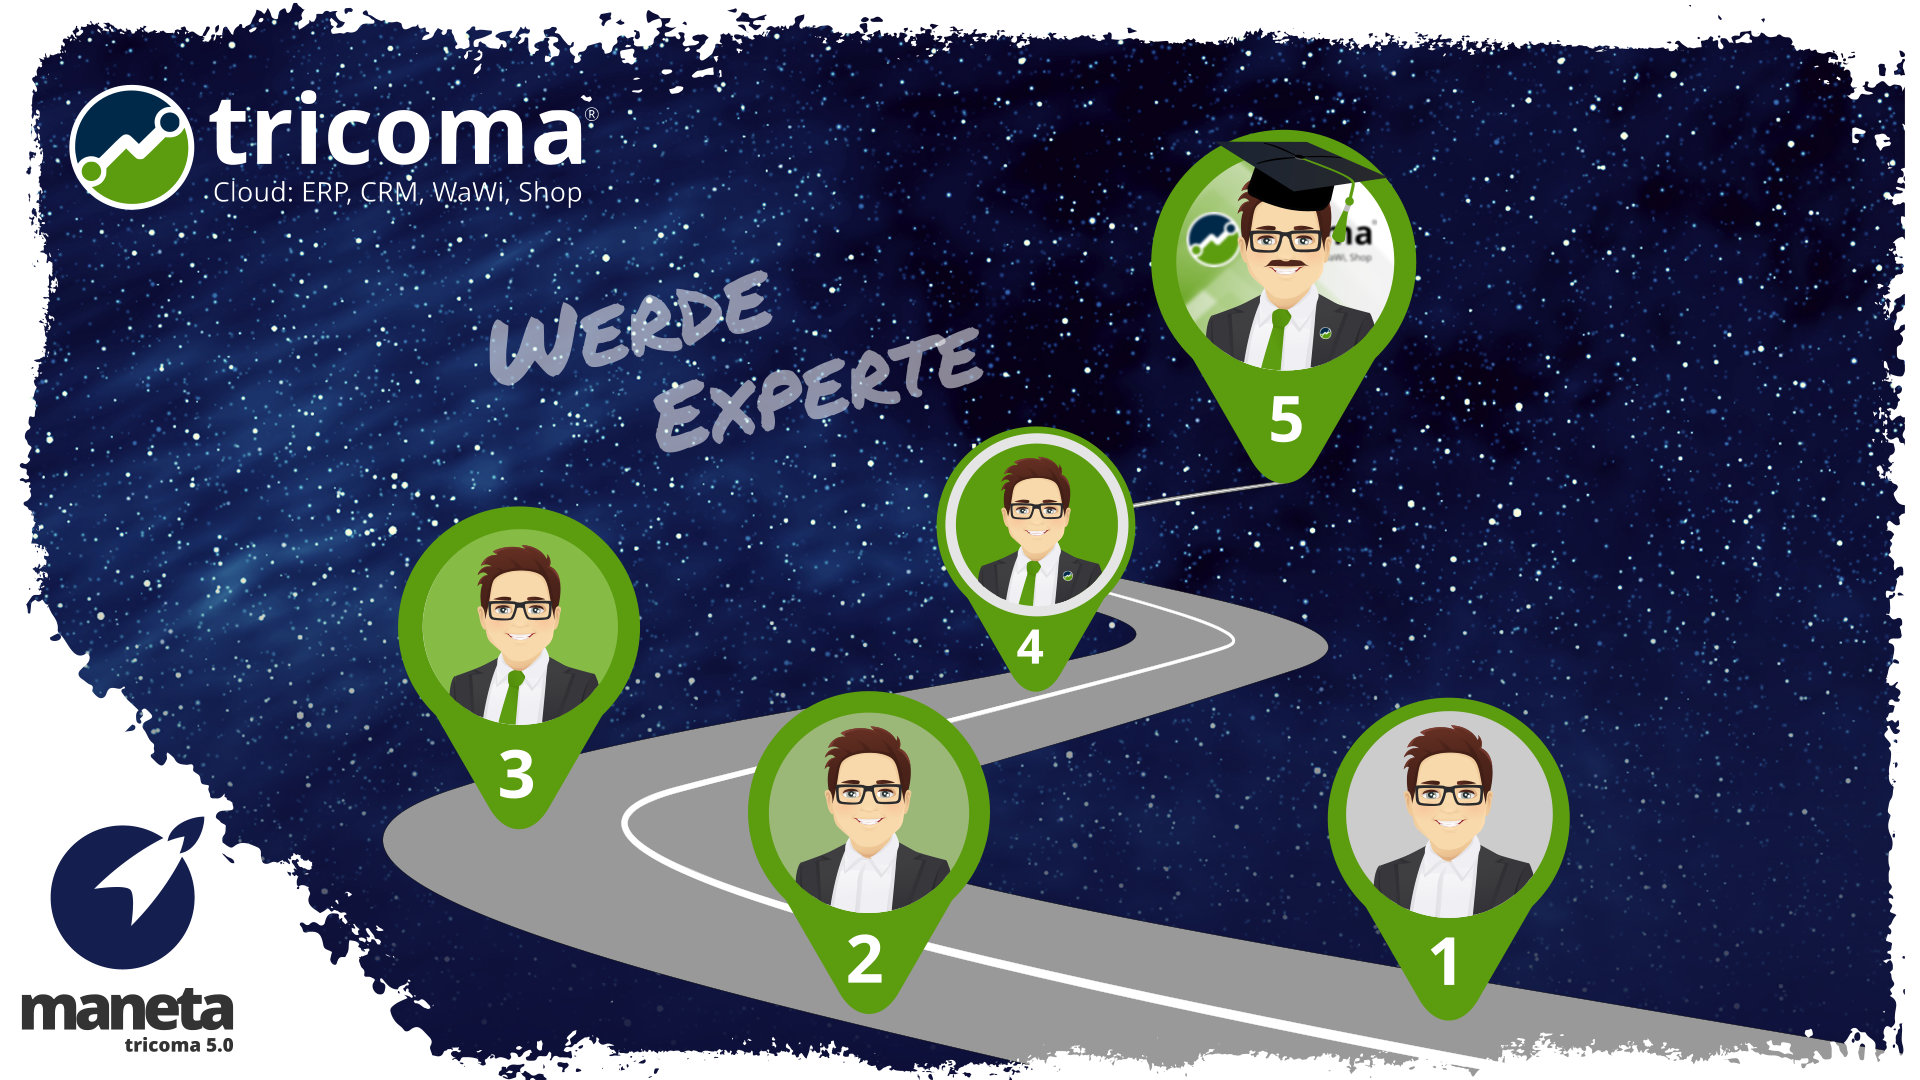 In 5 Schritten zum tricoma-Experten